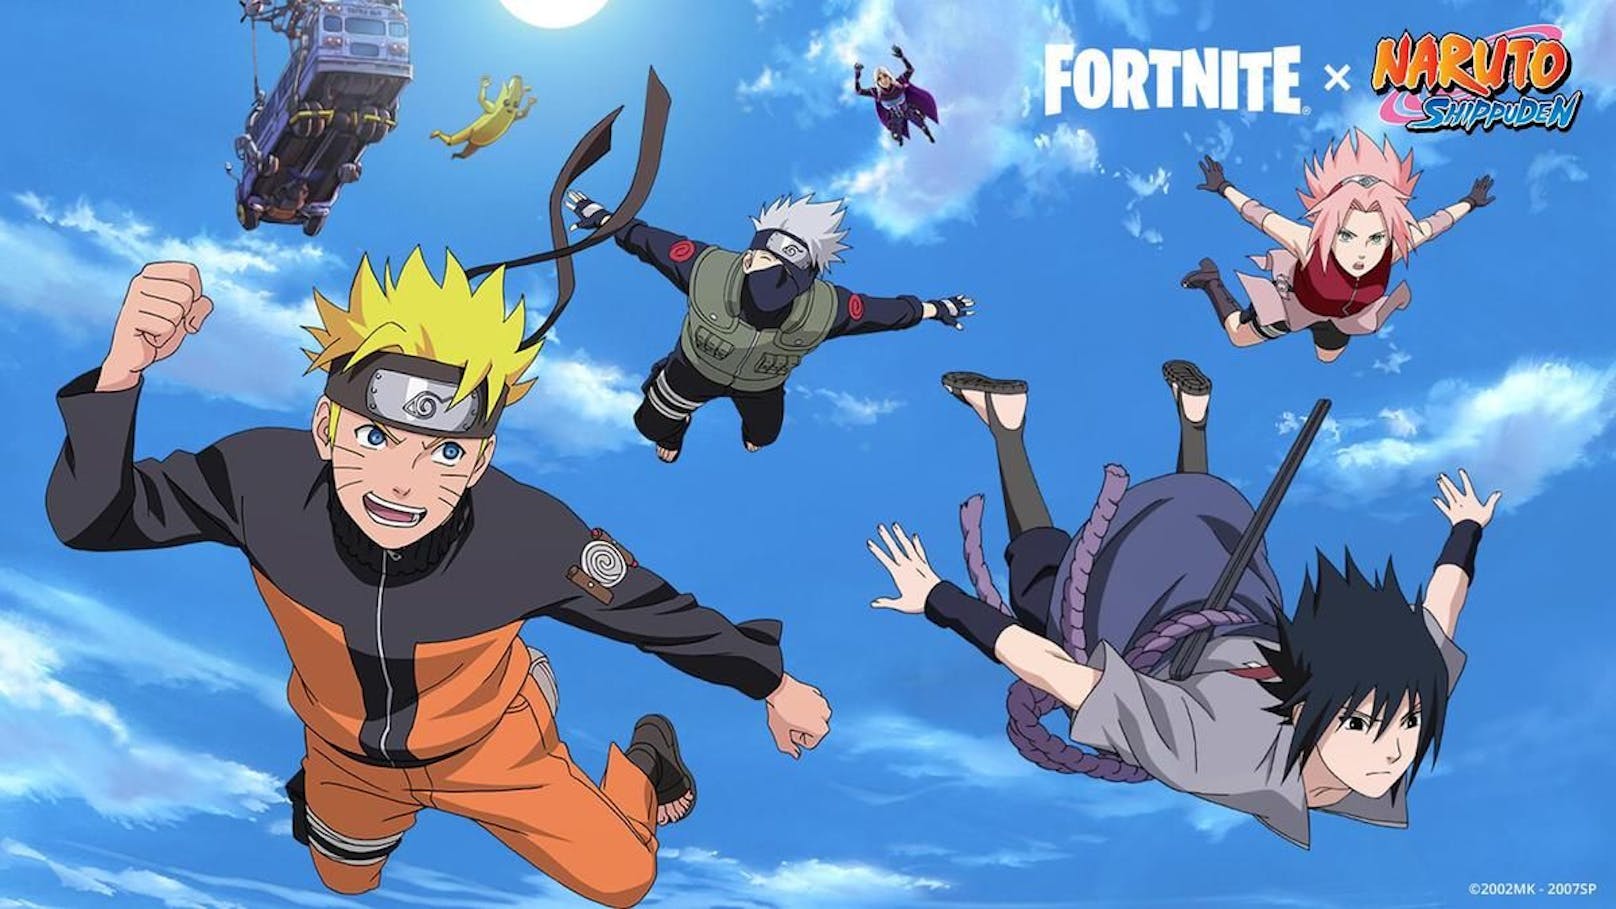 Als erste Anime-Serie erhält "Naruto Shippuden" eine Collab mit dem Multiplayer-Shooter "Fortnite".